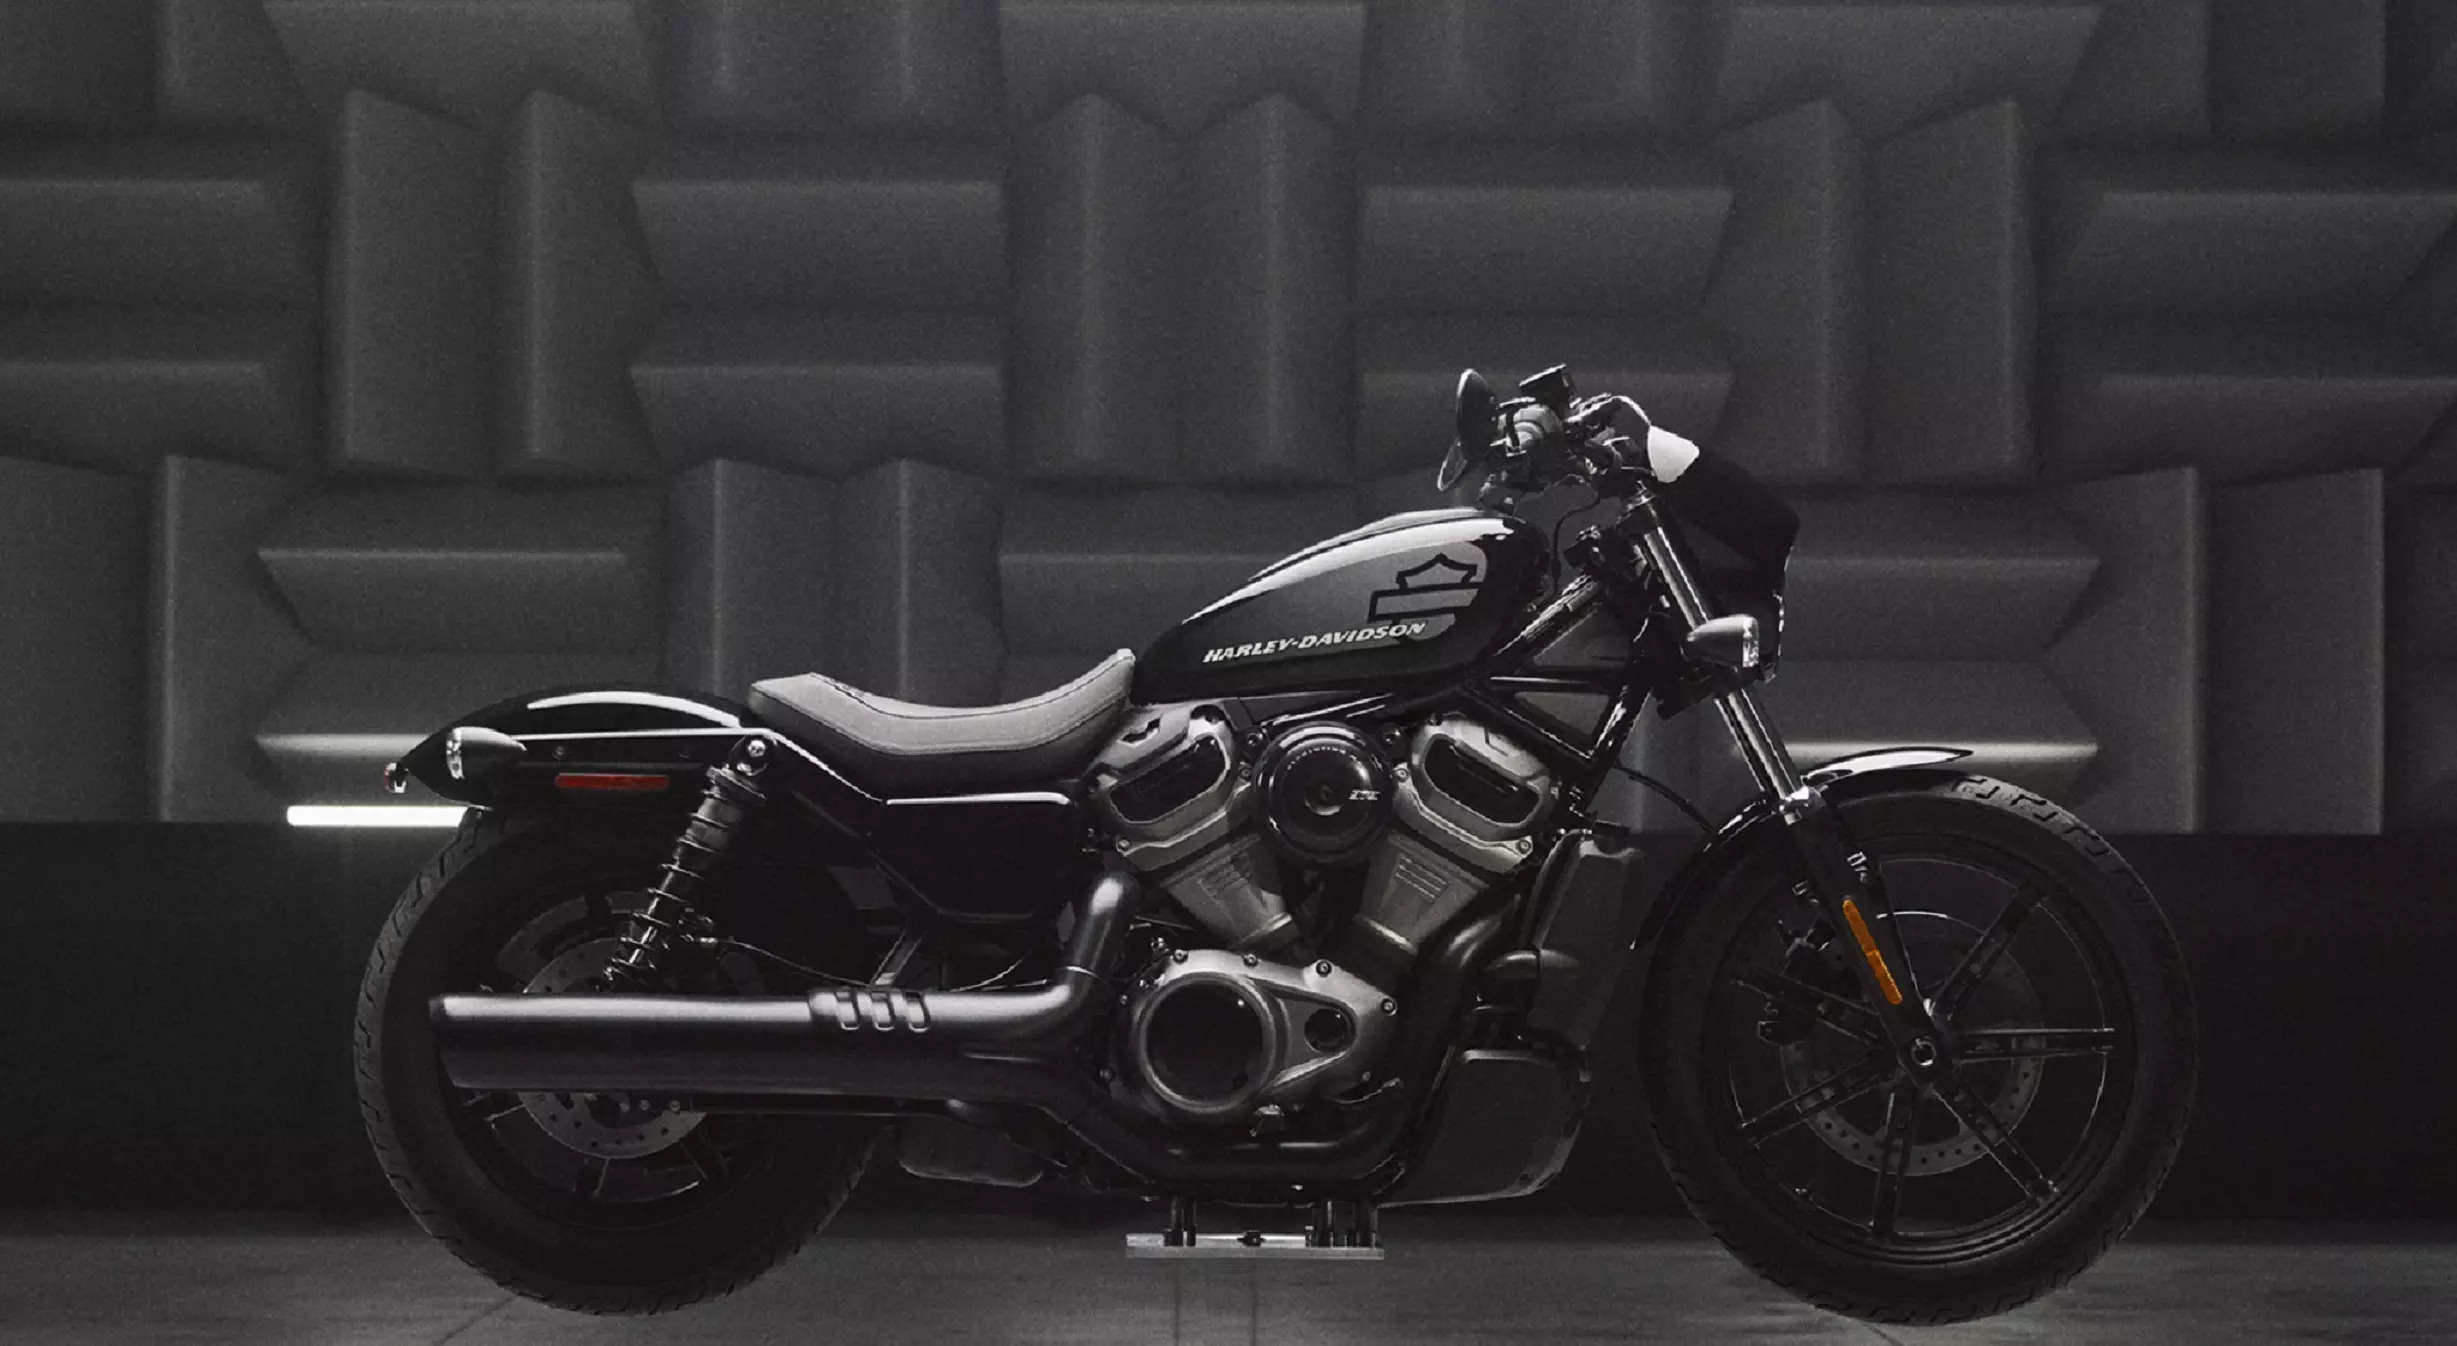  Harley Davidson Nightster